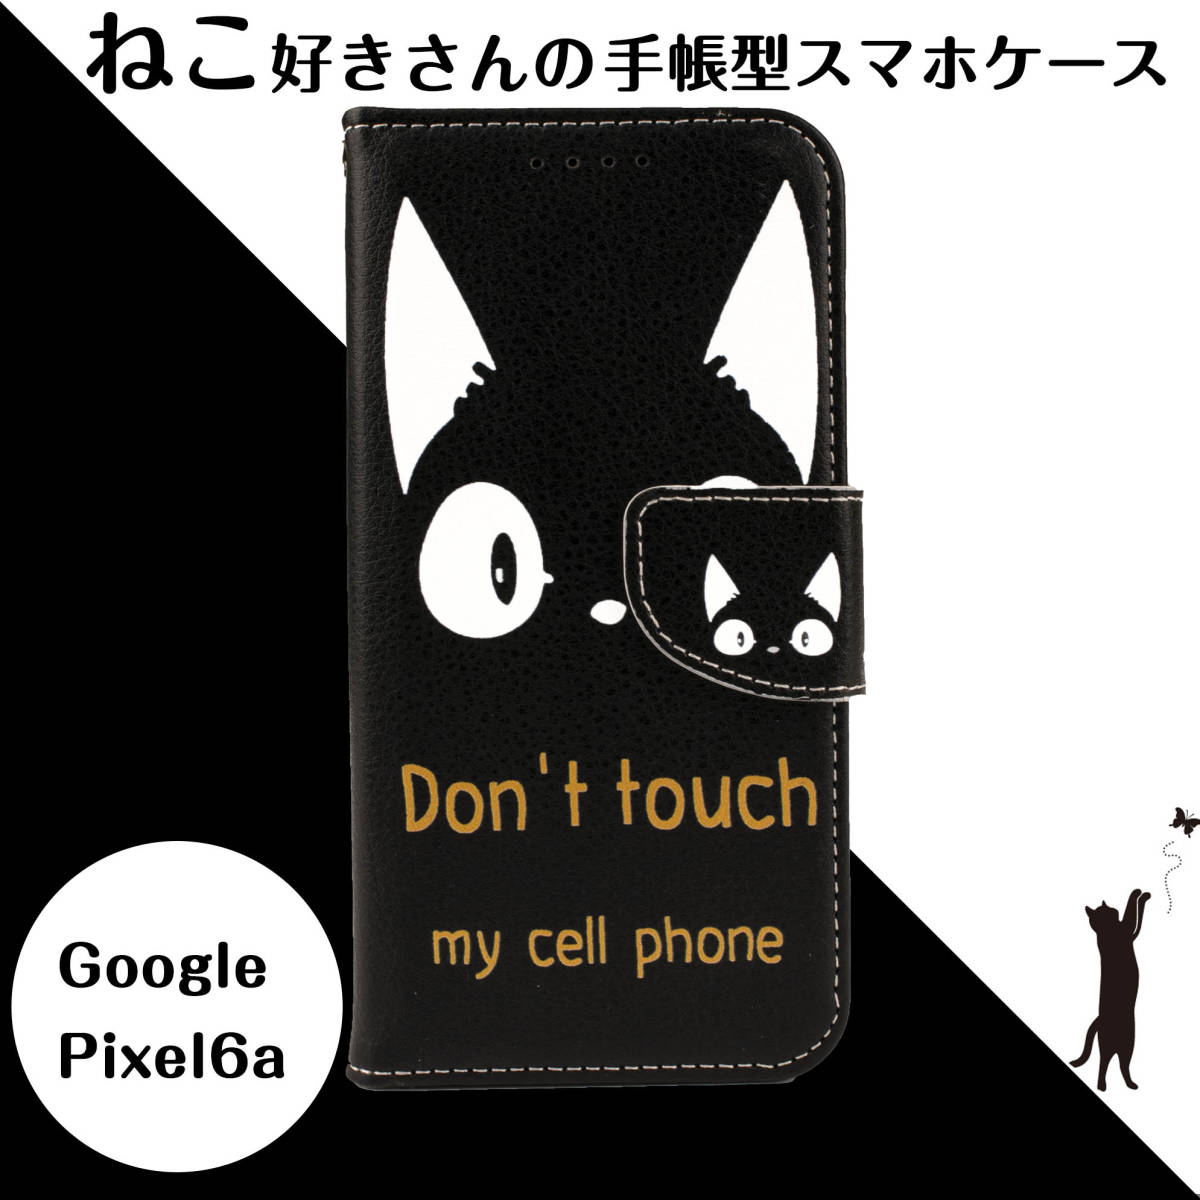 Google Pixel 6a ケース 手帳型 Pixel6a ケース 手帳 6a カバー グーグル ピクセル6a 猫 ねこ 黒猫 ブラック ホワイト かわいい おしゃれ_画像1